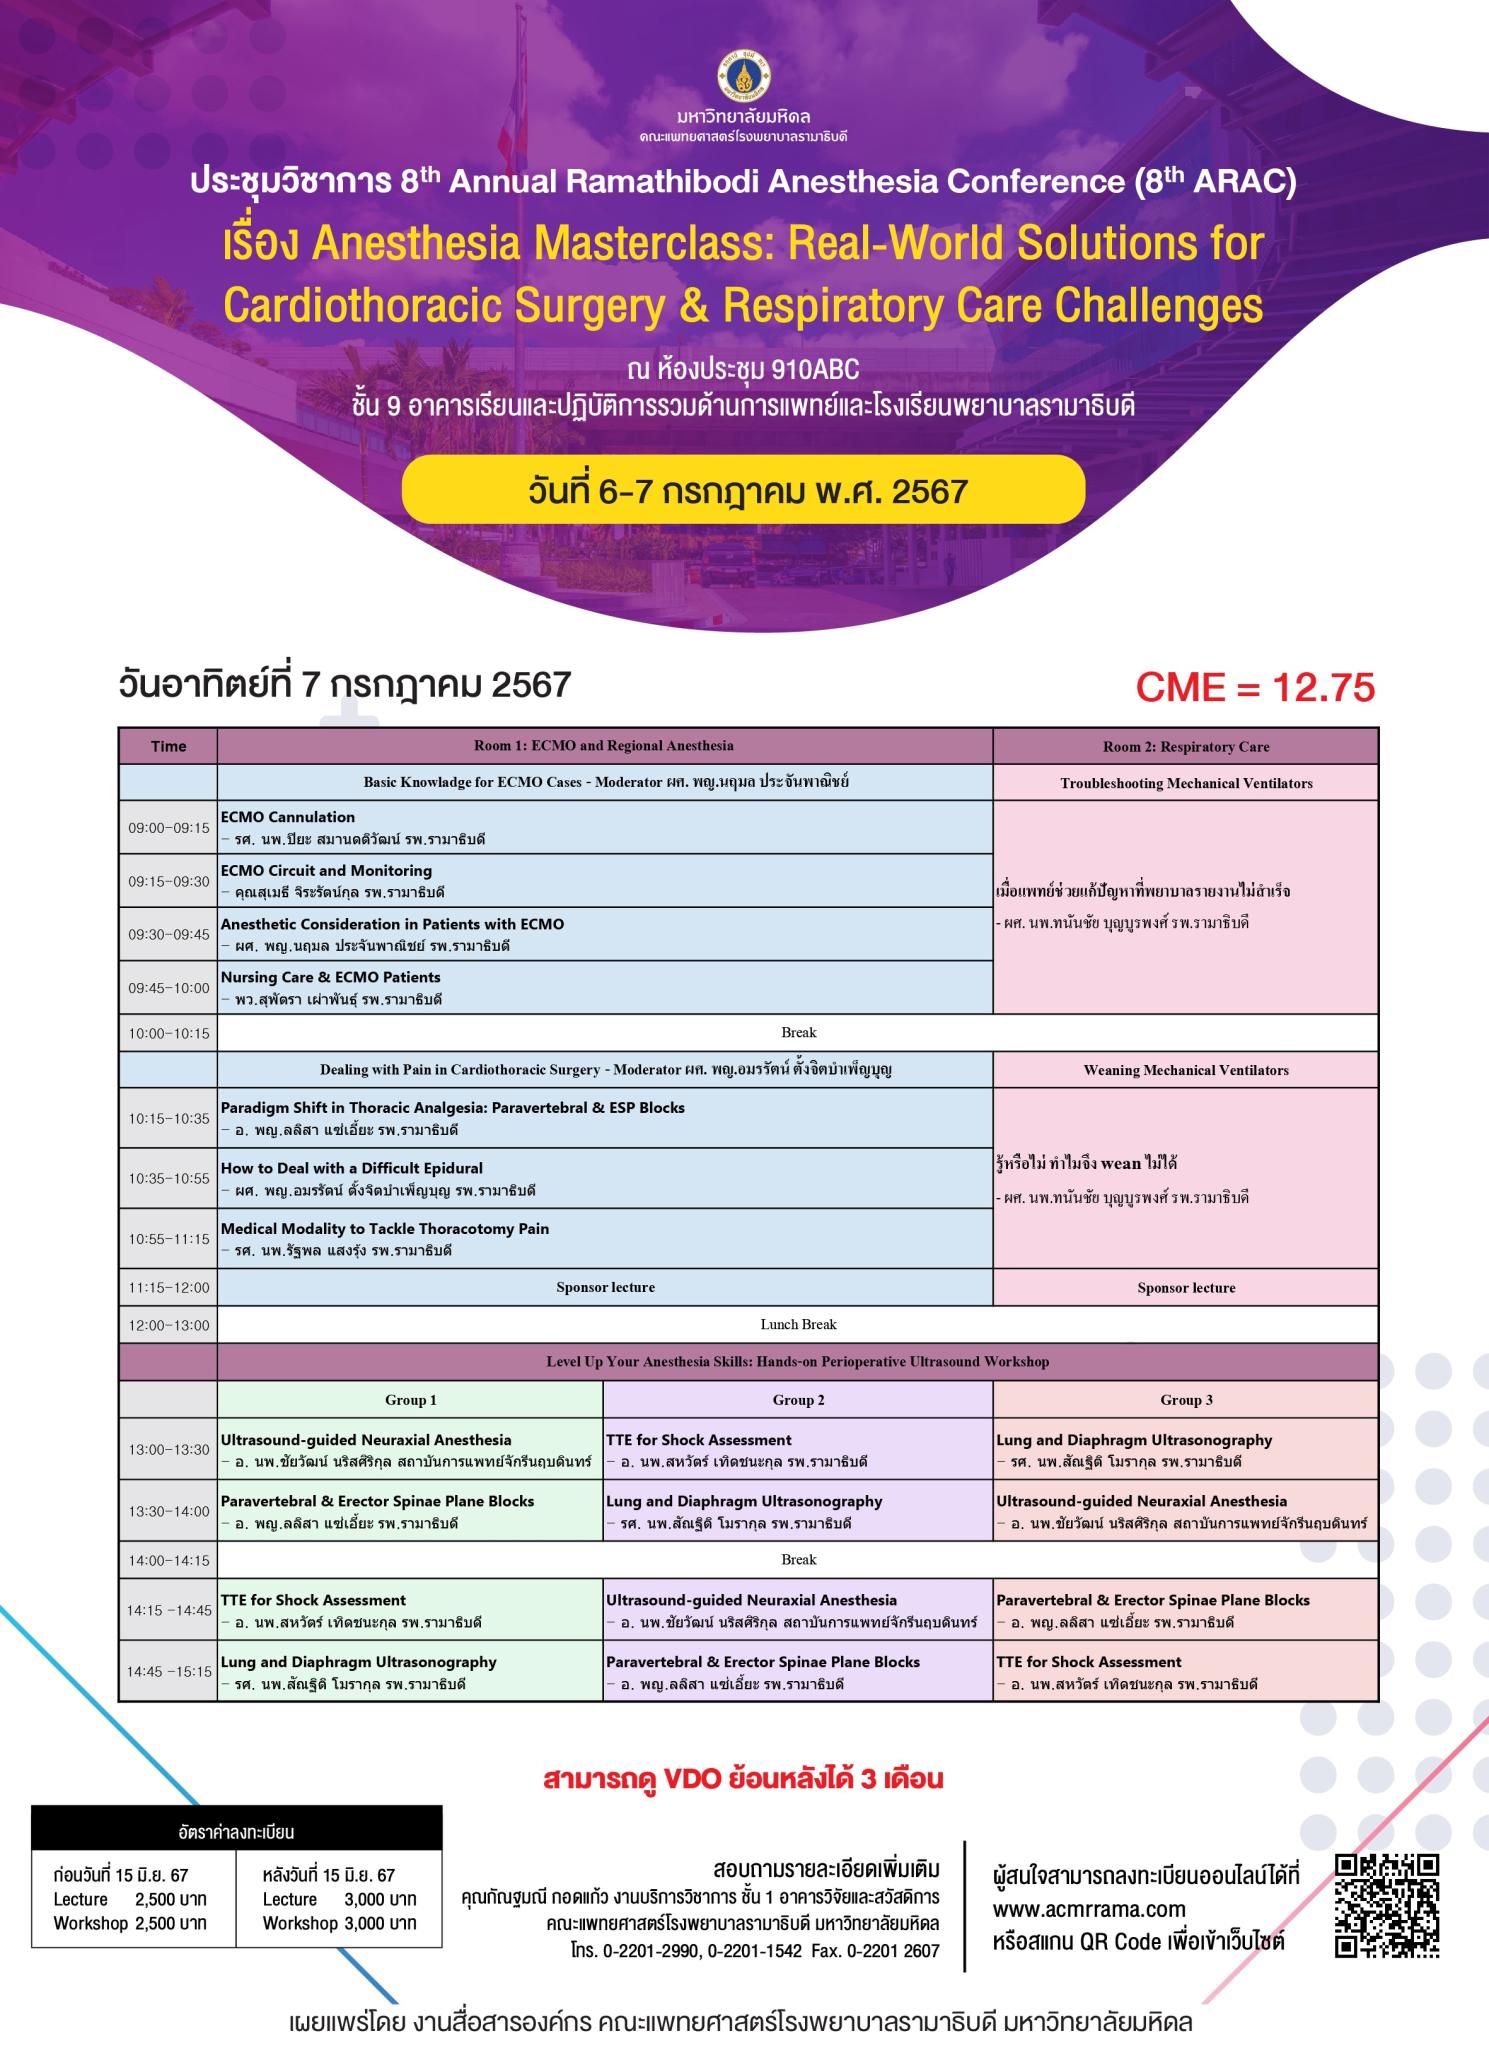 ประชุมวิชาการ 8th Annual Ramathibodi Anesthesia Conference (8th ARAC) เรื่อง Anesthesia Masterclass: Real-World Solutions for Cardiothoracic Surgery & Respiratory Care Challenges